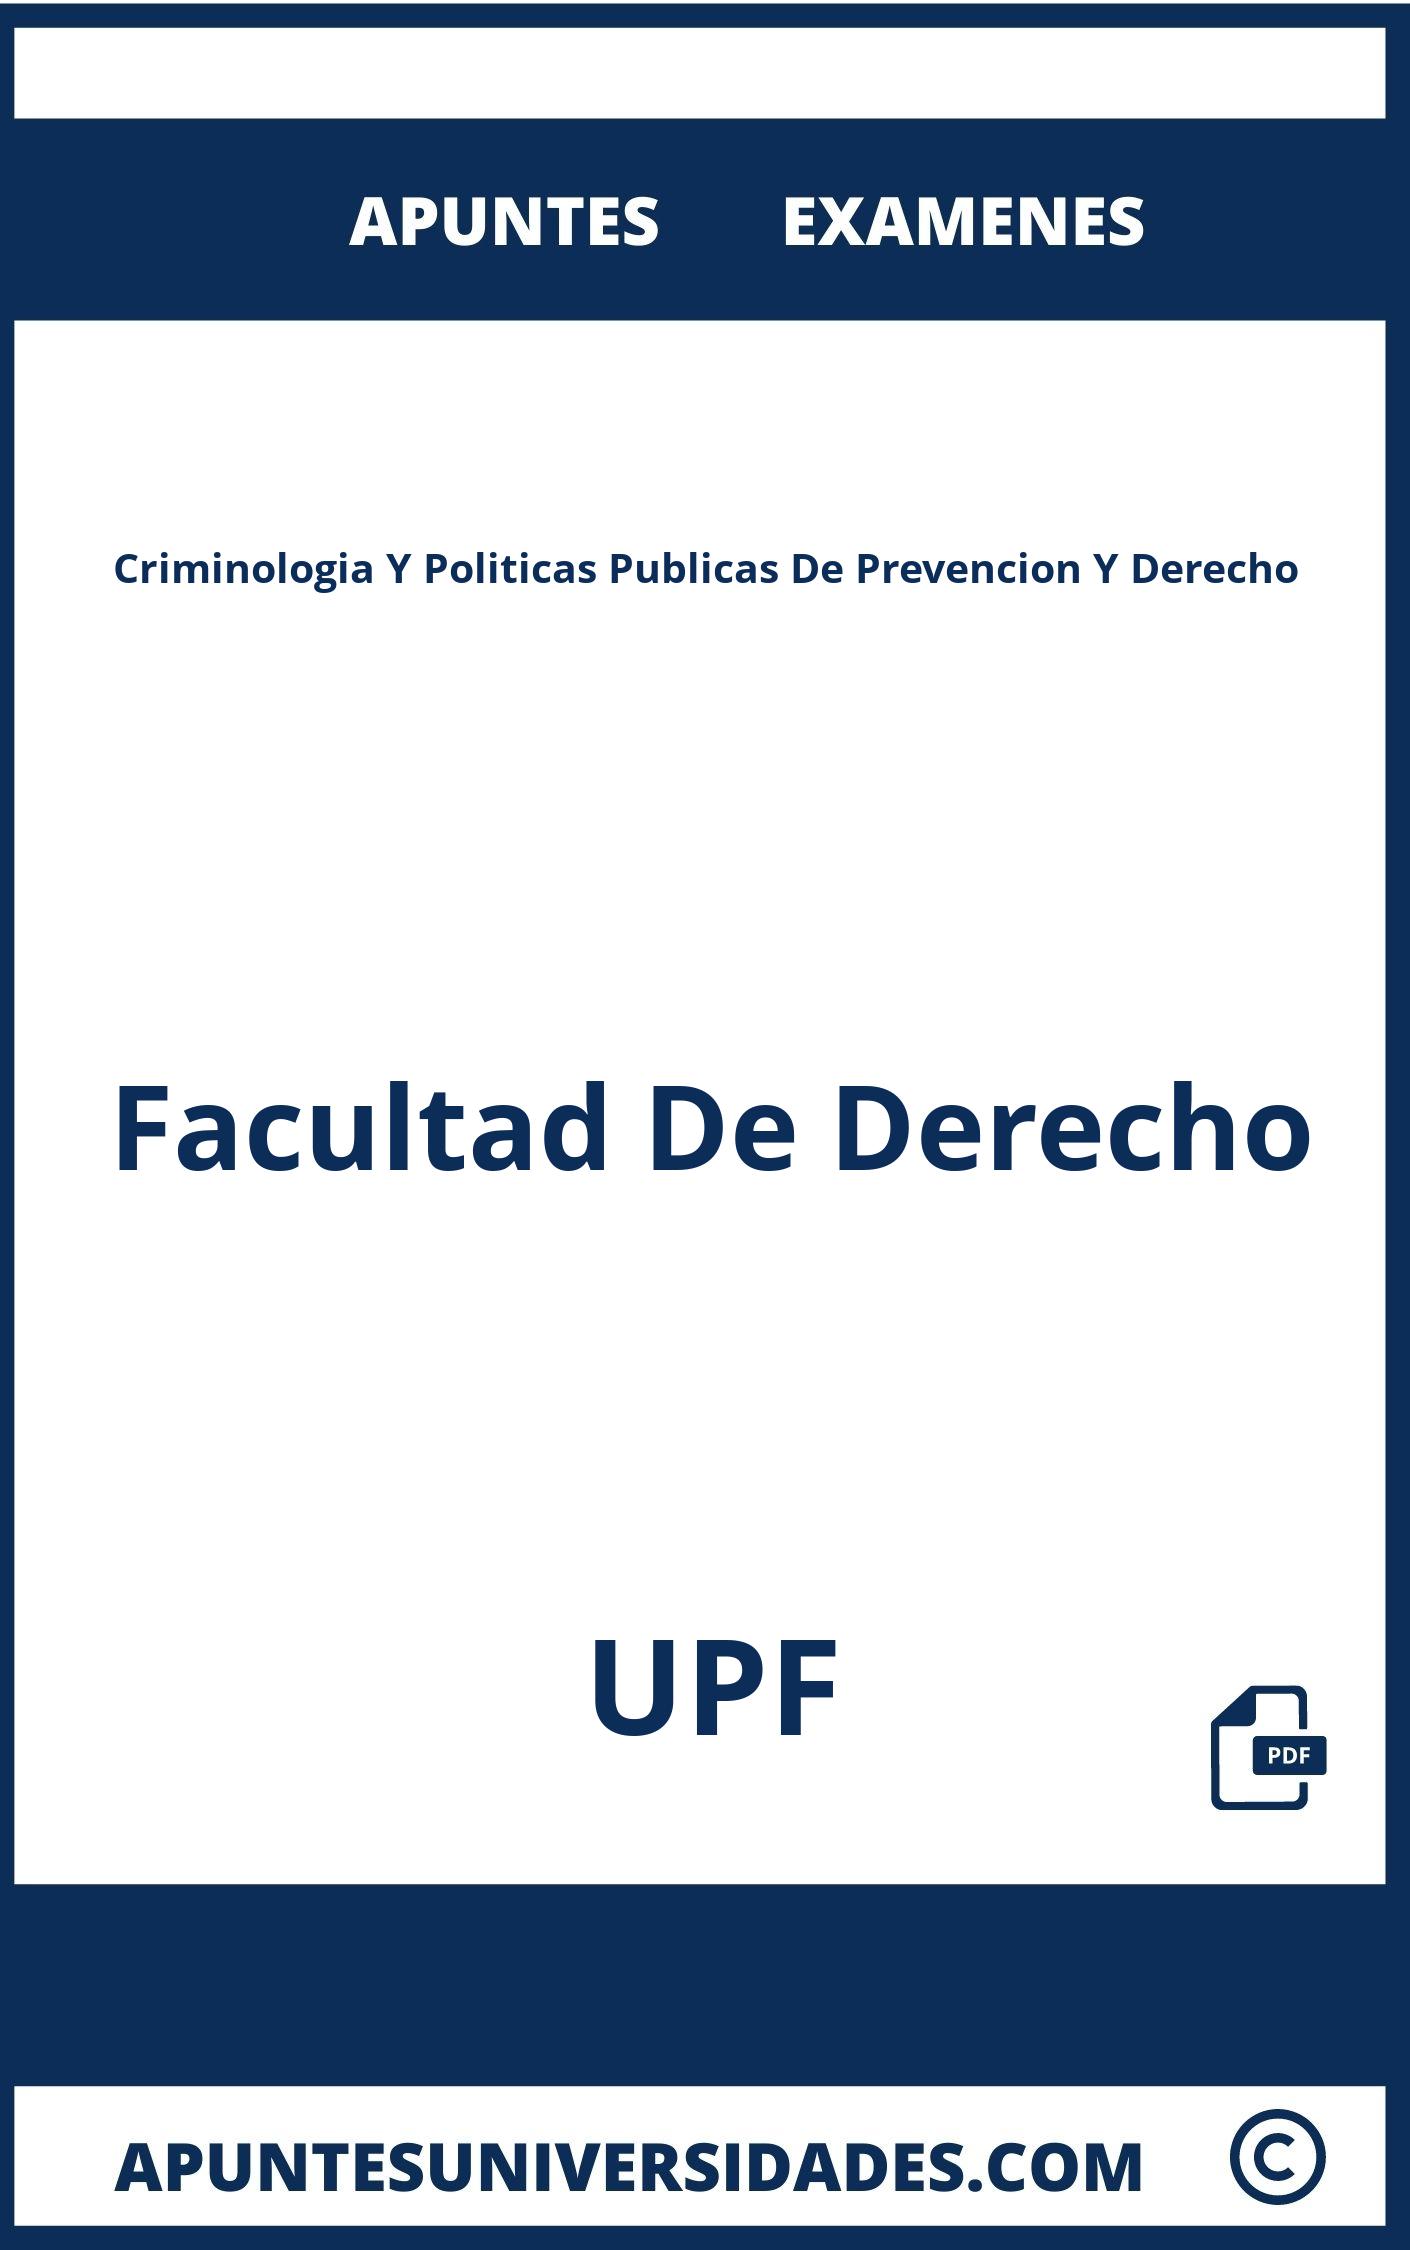 Examenes y Apuntes Criminologia Y Politicas Publicas De Prevencion Y Derecho UPF